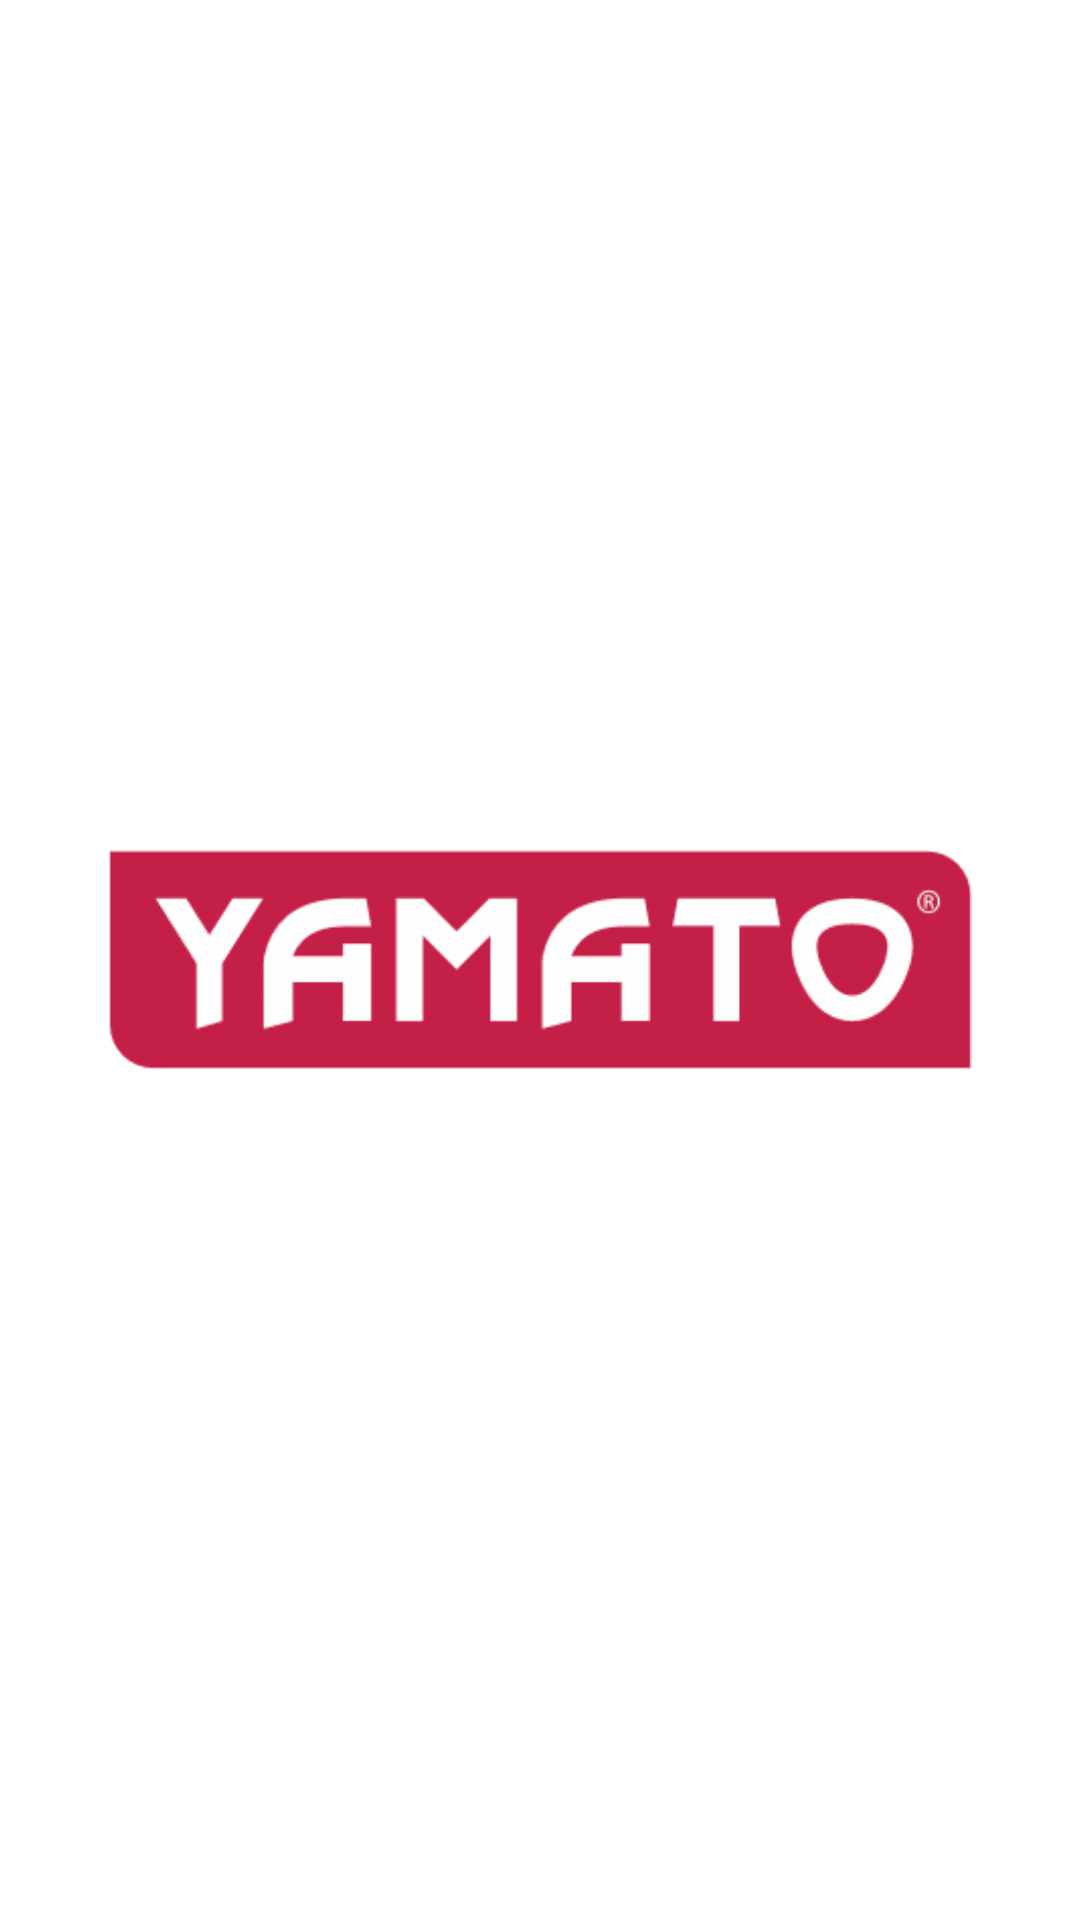 Yamato -Bidone aspiratutto elettrico 1400W vasca inox lt.30 doppio filtro Yamato